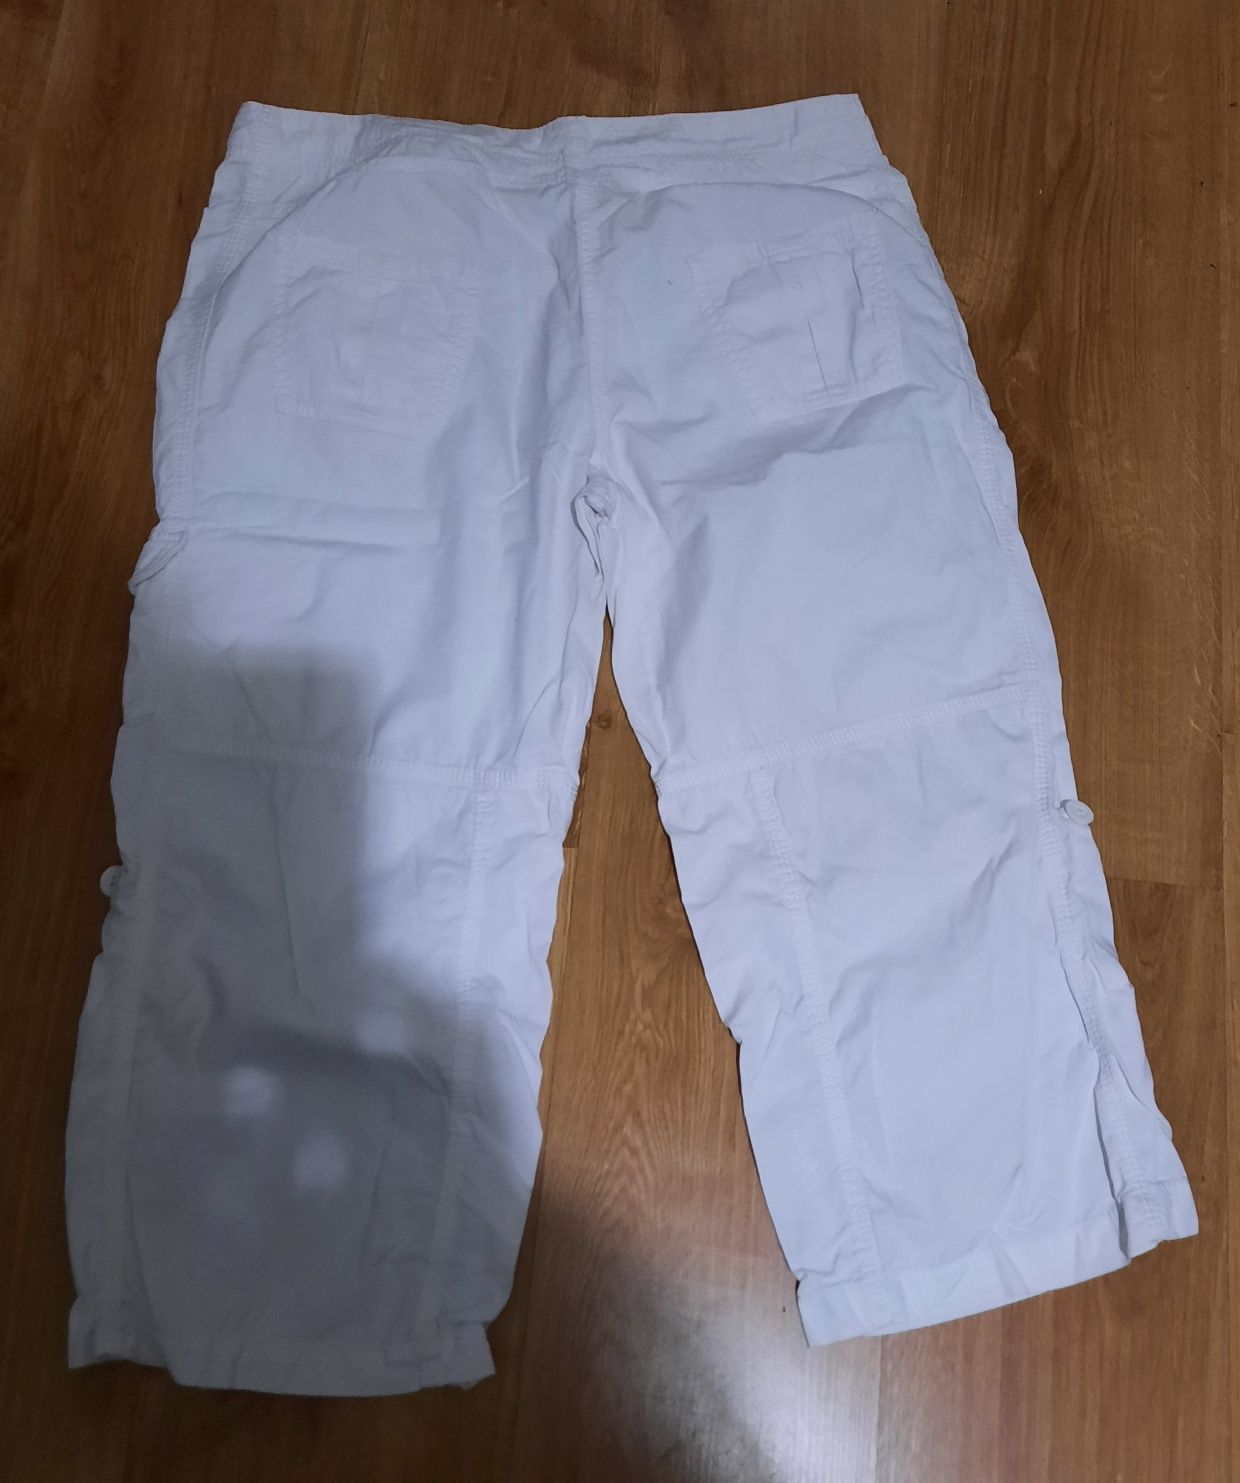 Spodnie damskie białe za kolano firmy M&S